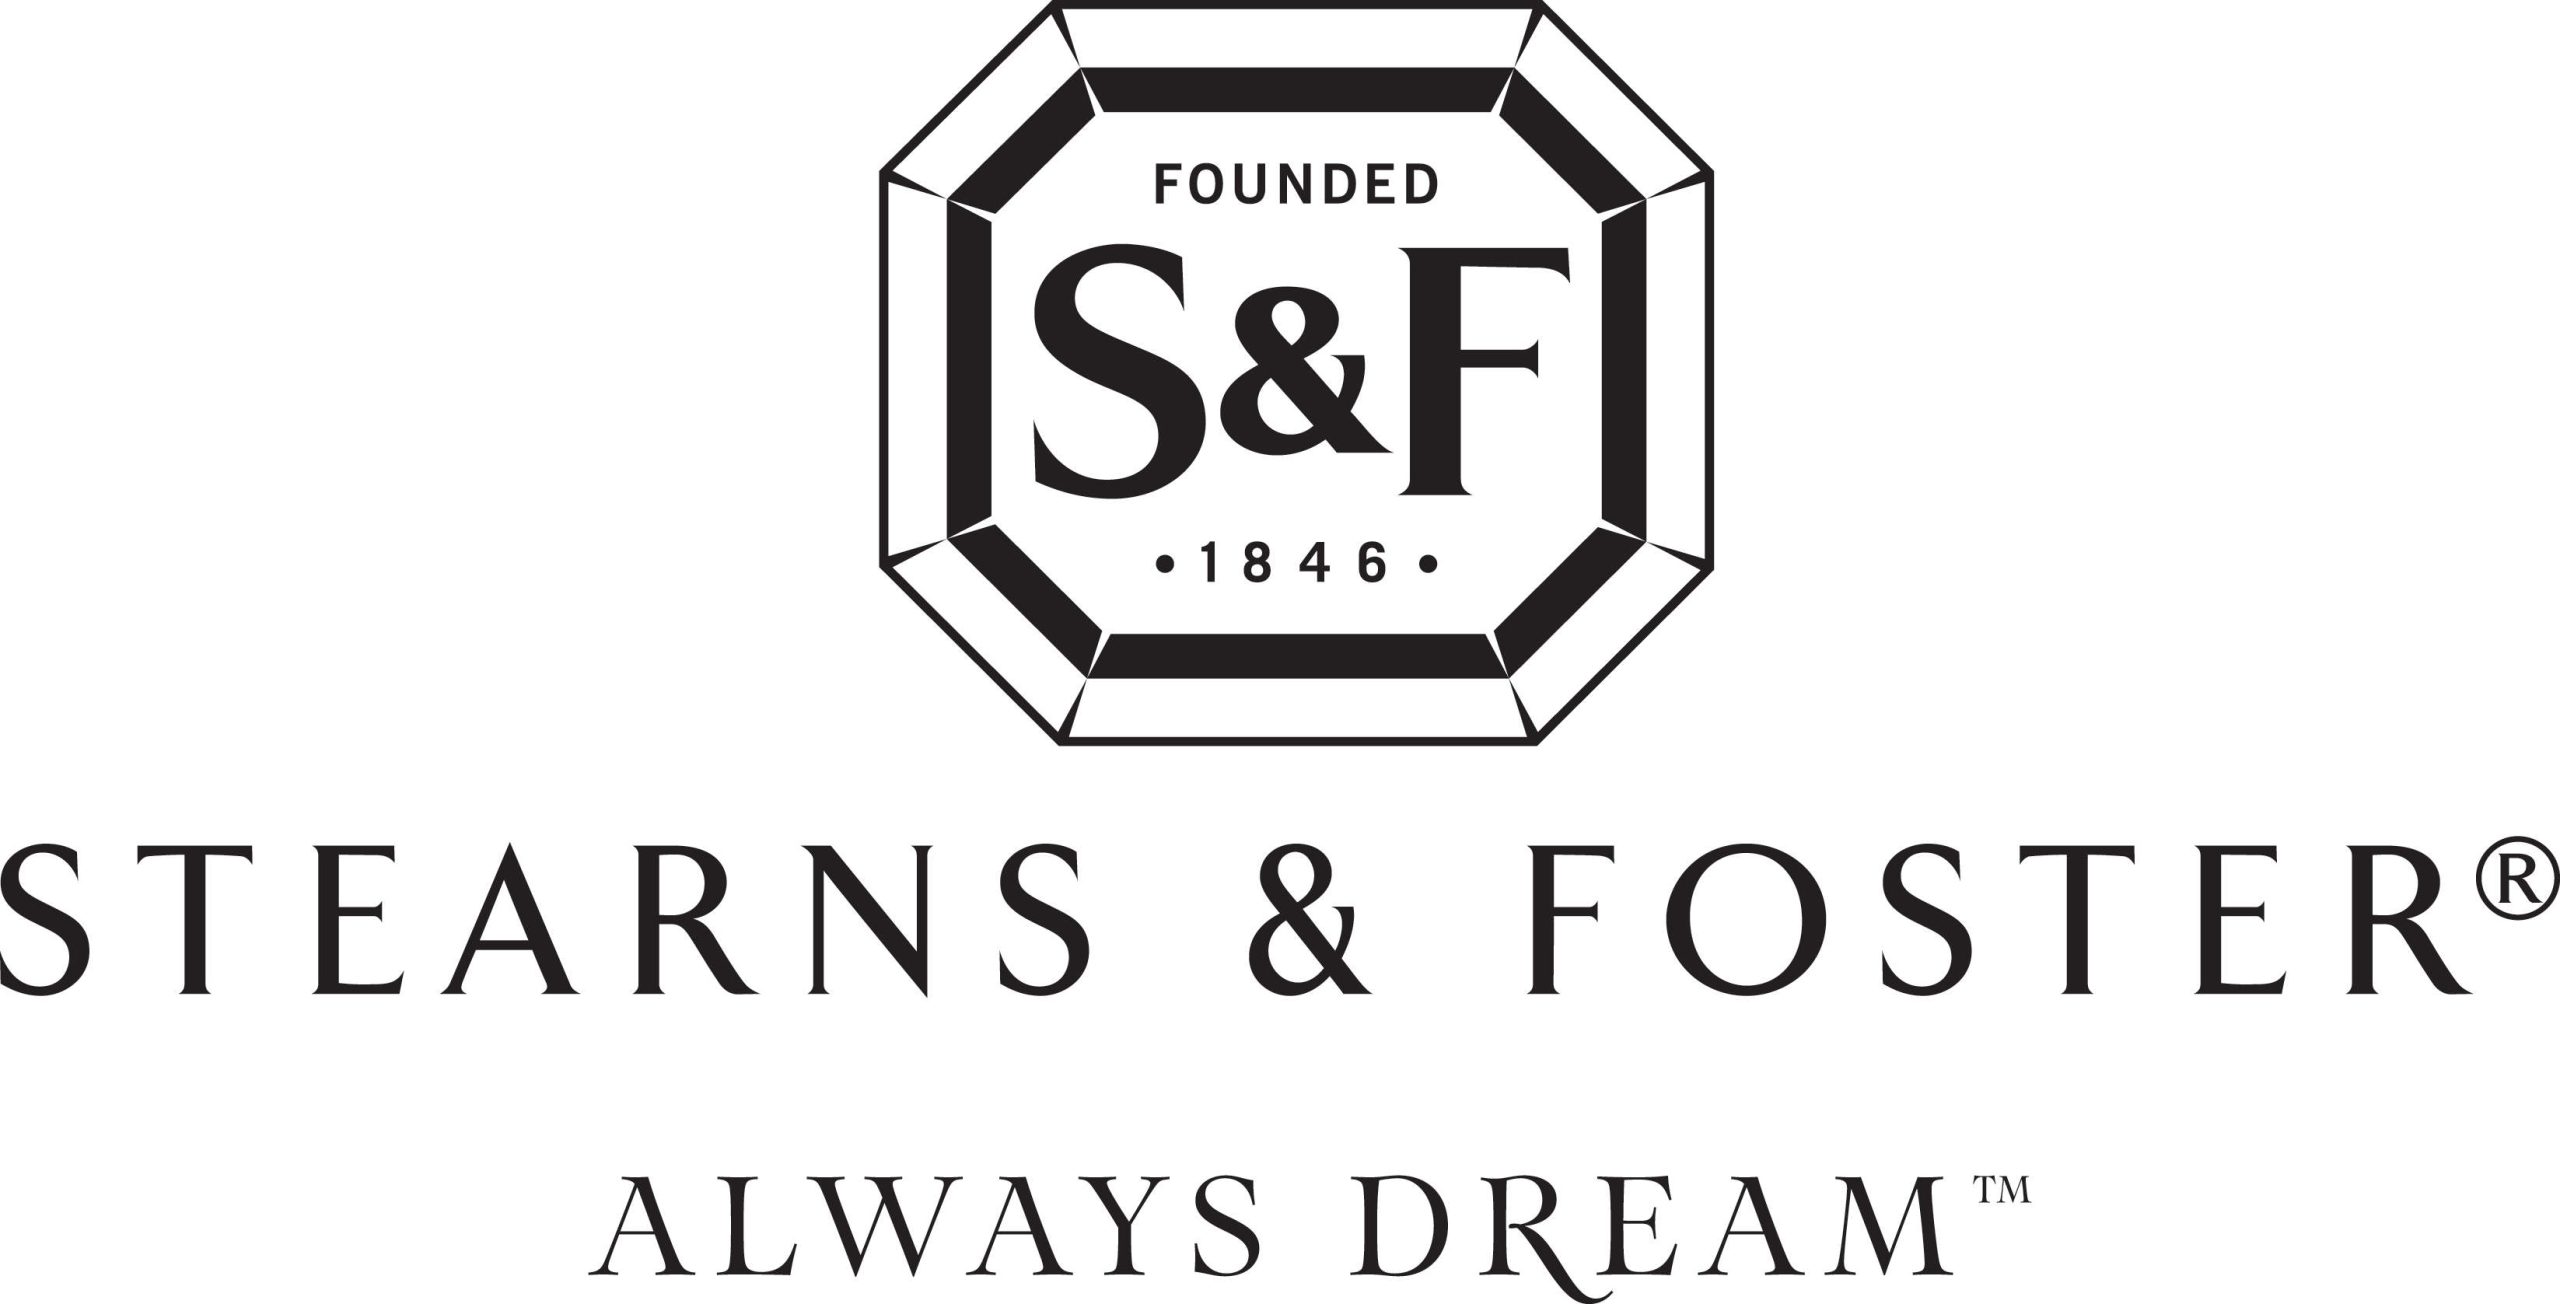 Stears & Foster Always Dream logo